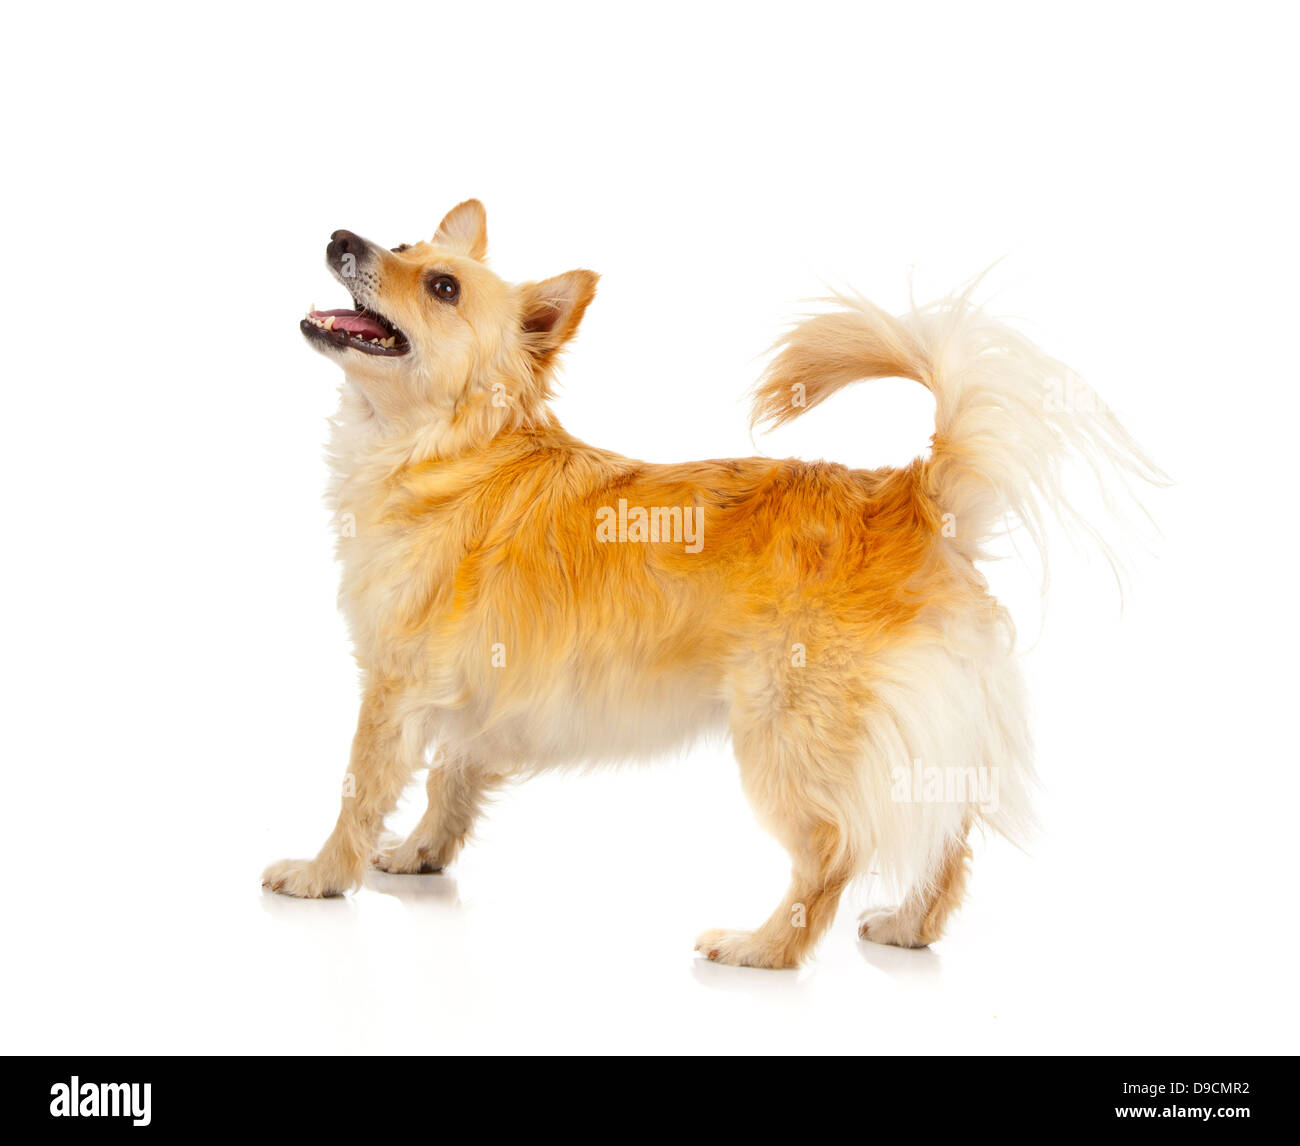 Spitz dog on white background Stock Photo